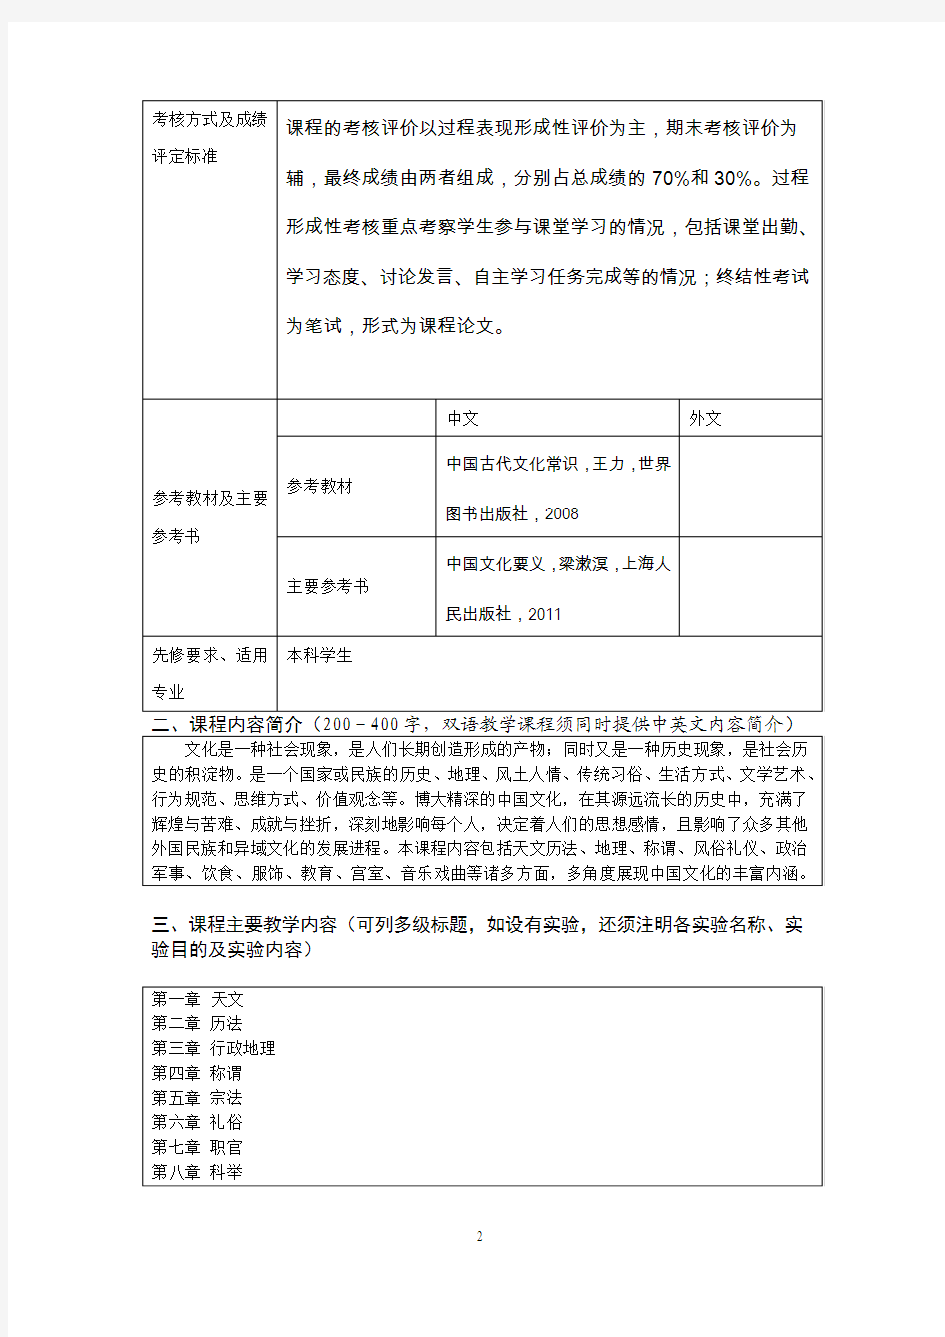 中国文化常识选修课程教学大纲格式1(1)